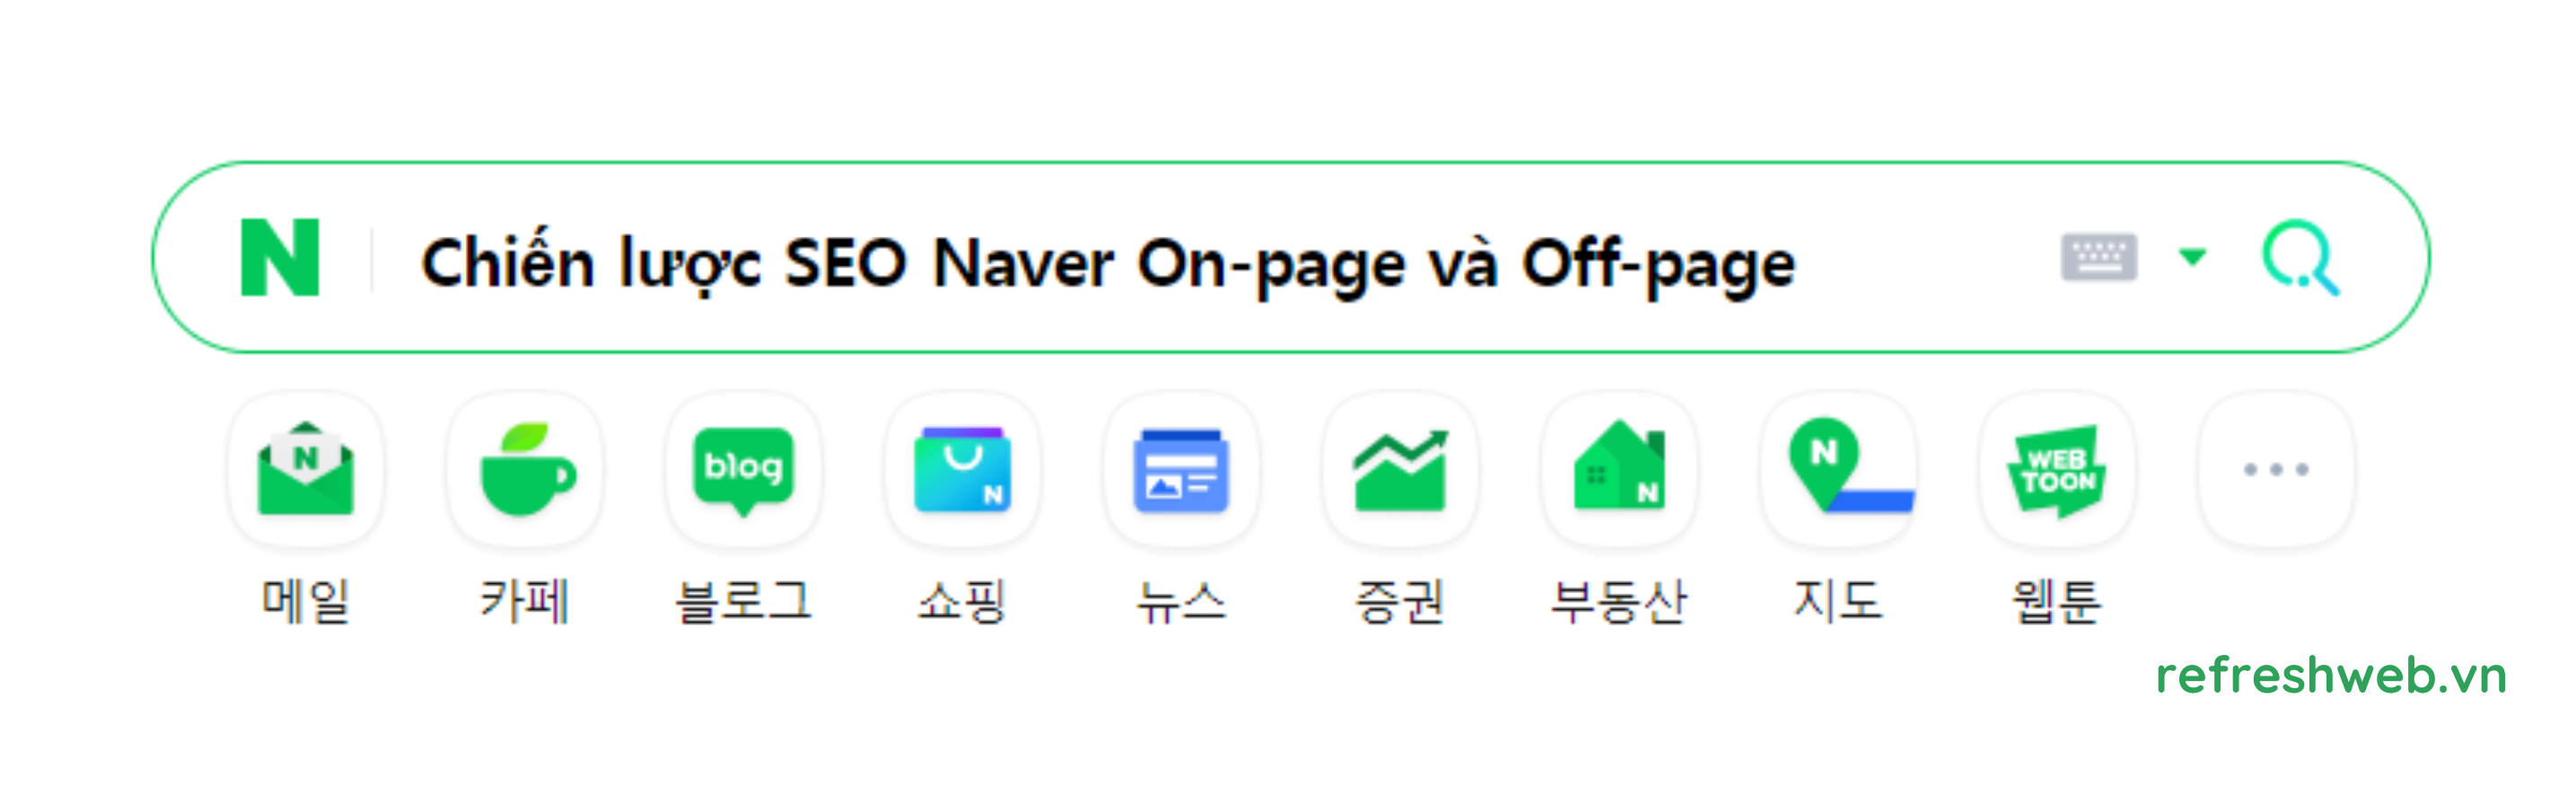 chiến lược SEO Naver